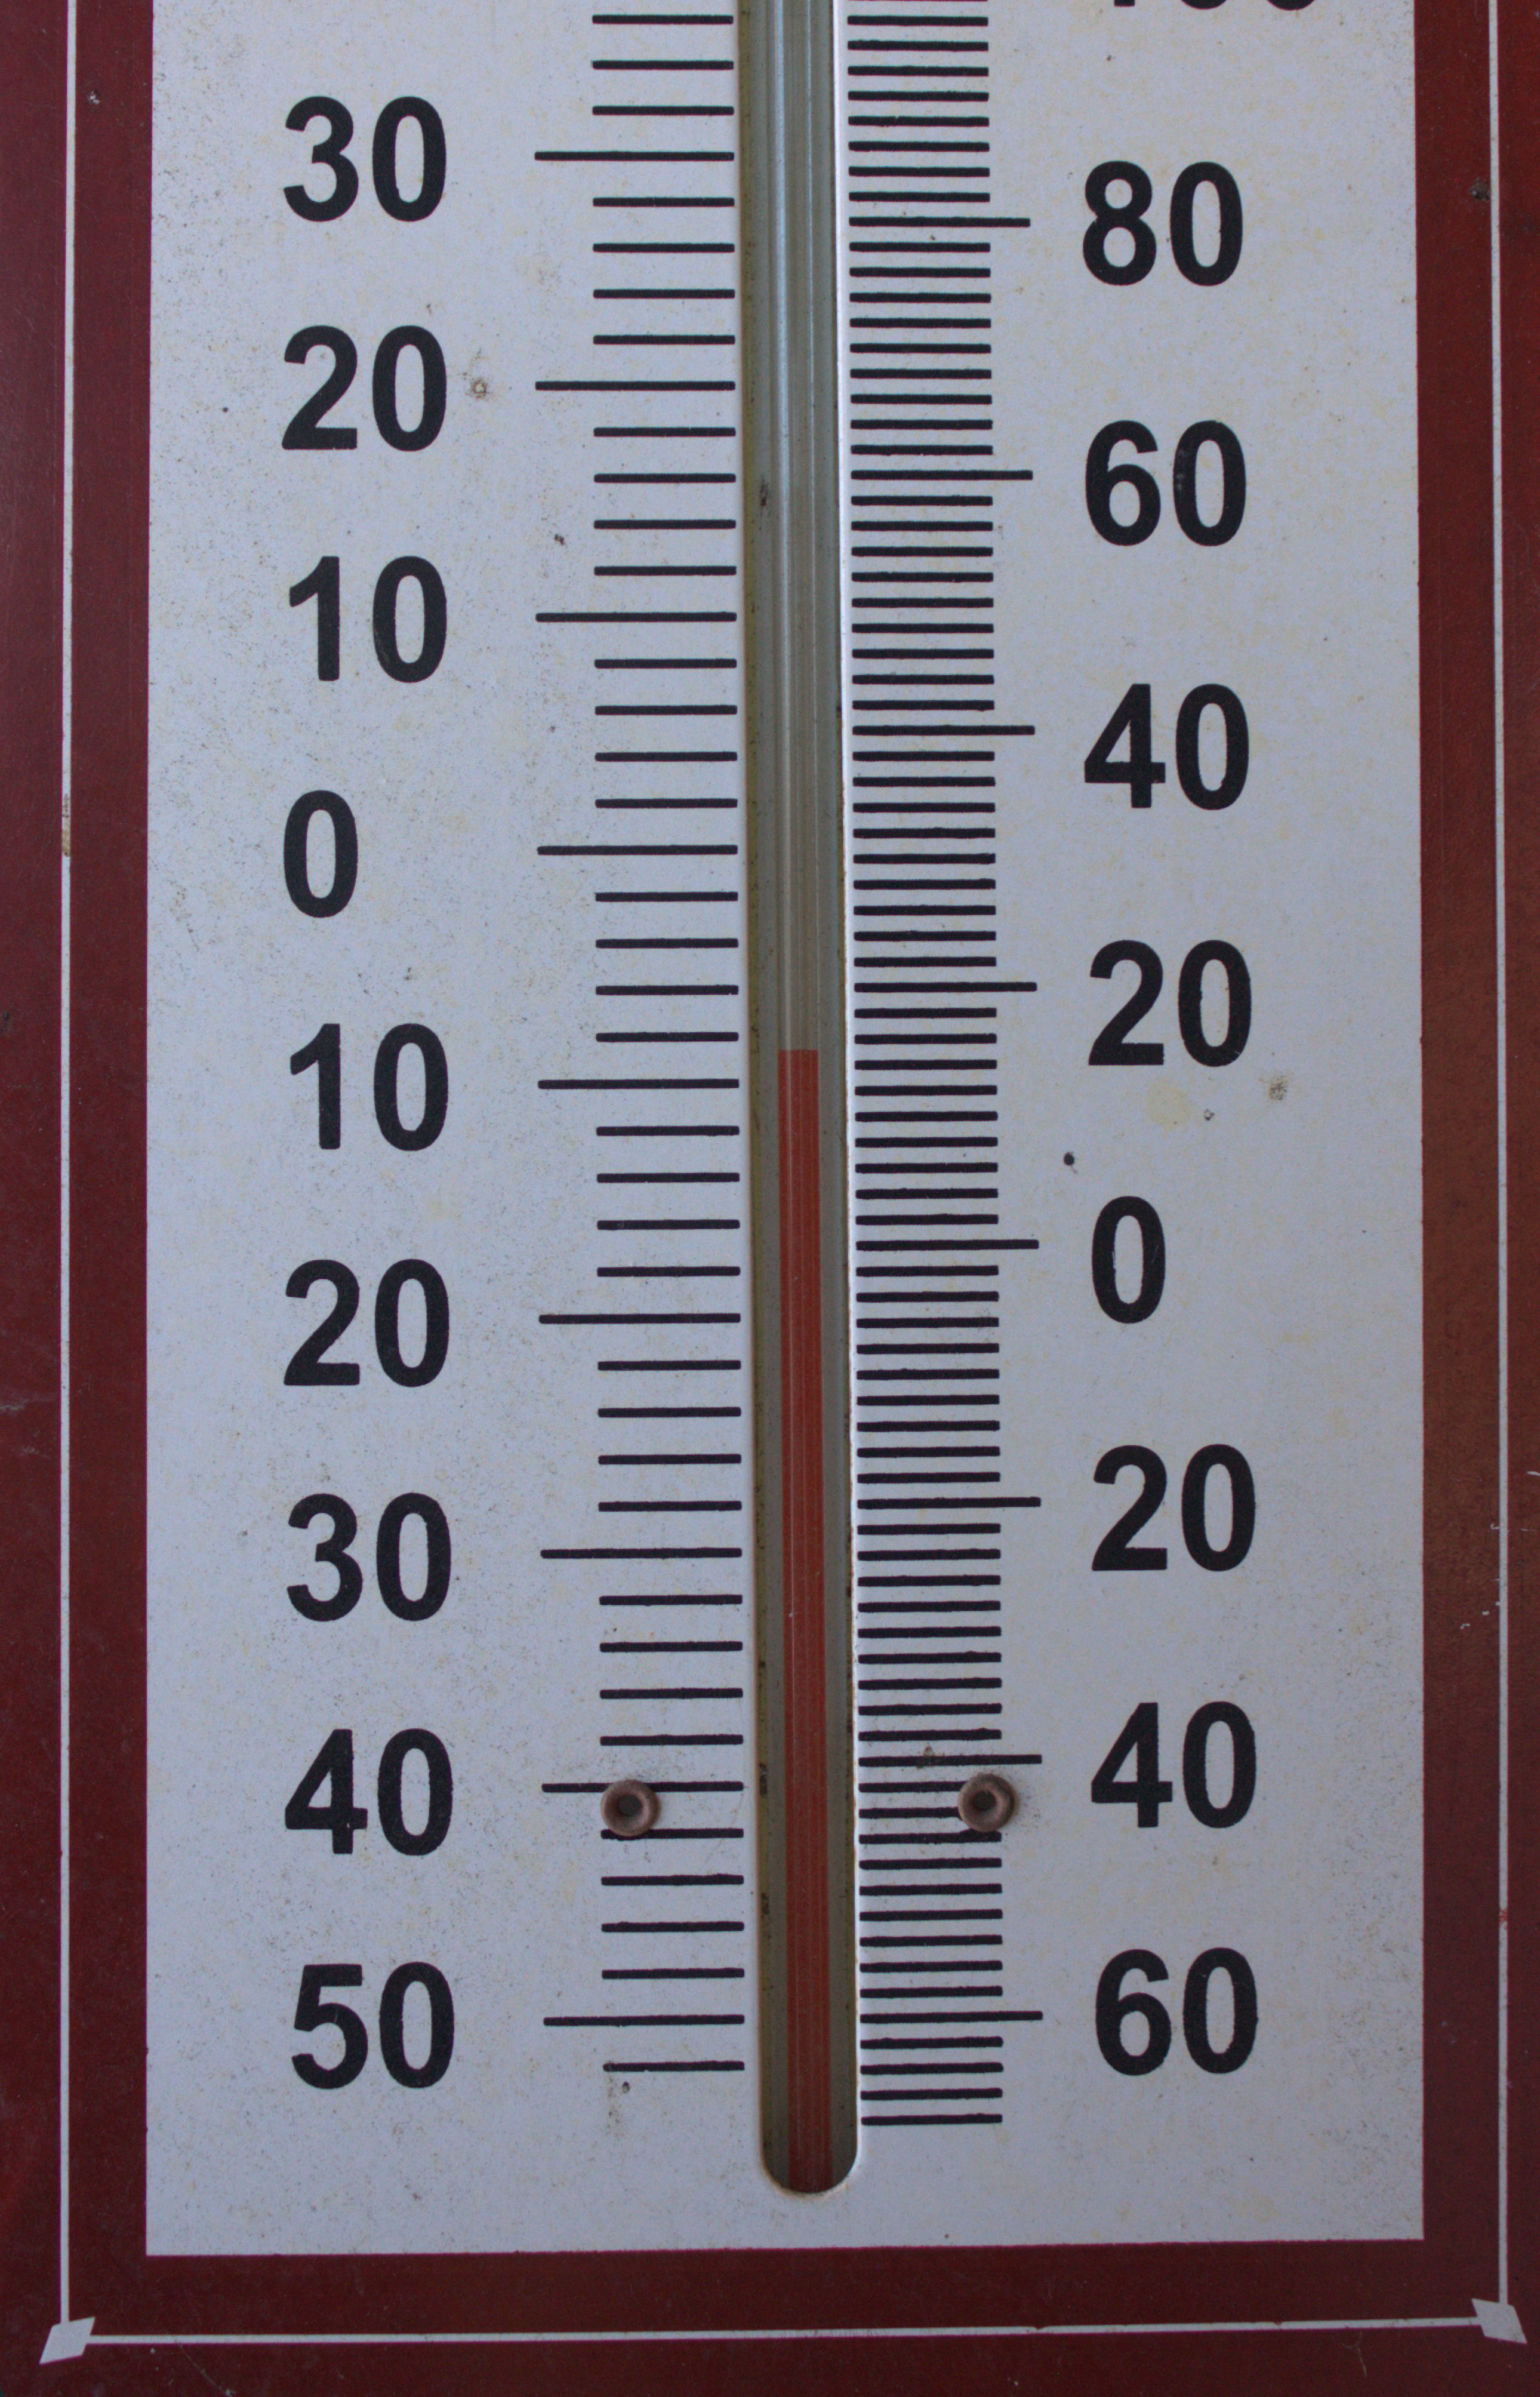 ThermometerIMG_2414 -1.jpg